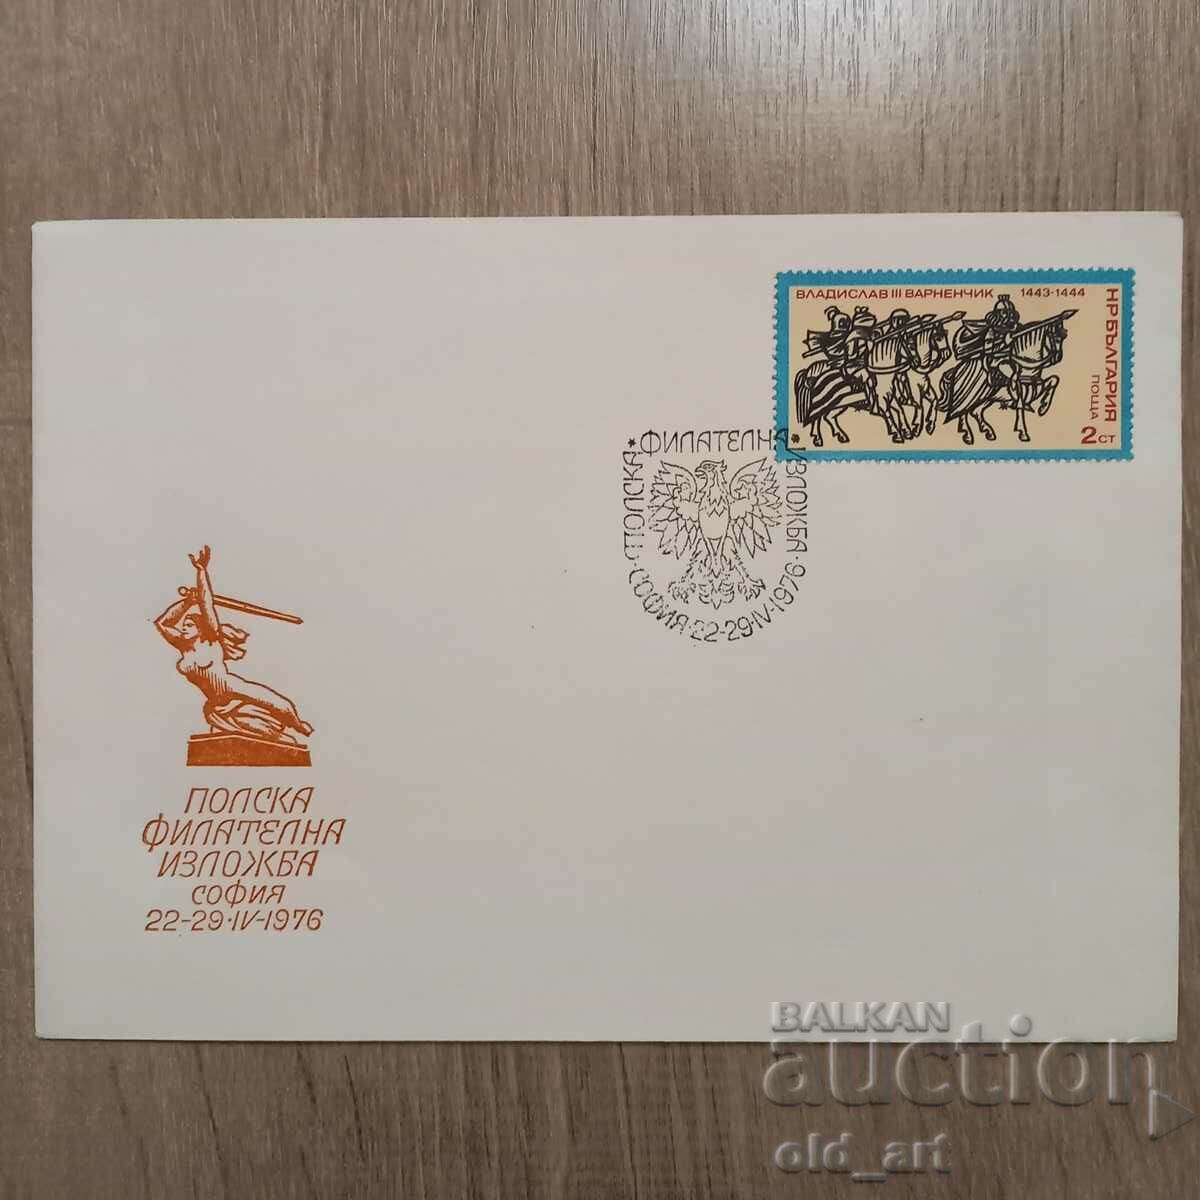 Ταχυδρομικός φάκελος - Πολωνική φιλοτελική έκθεση